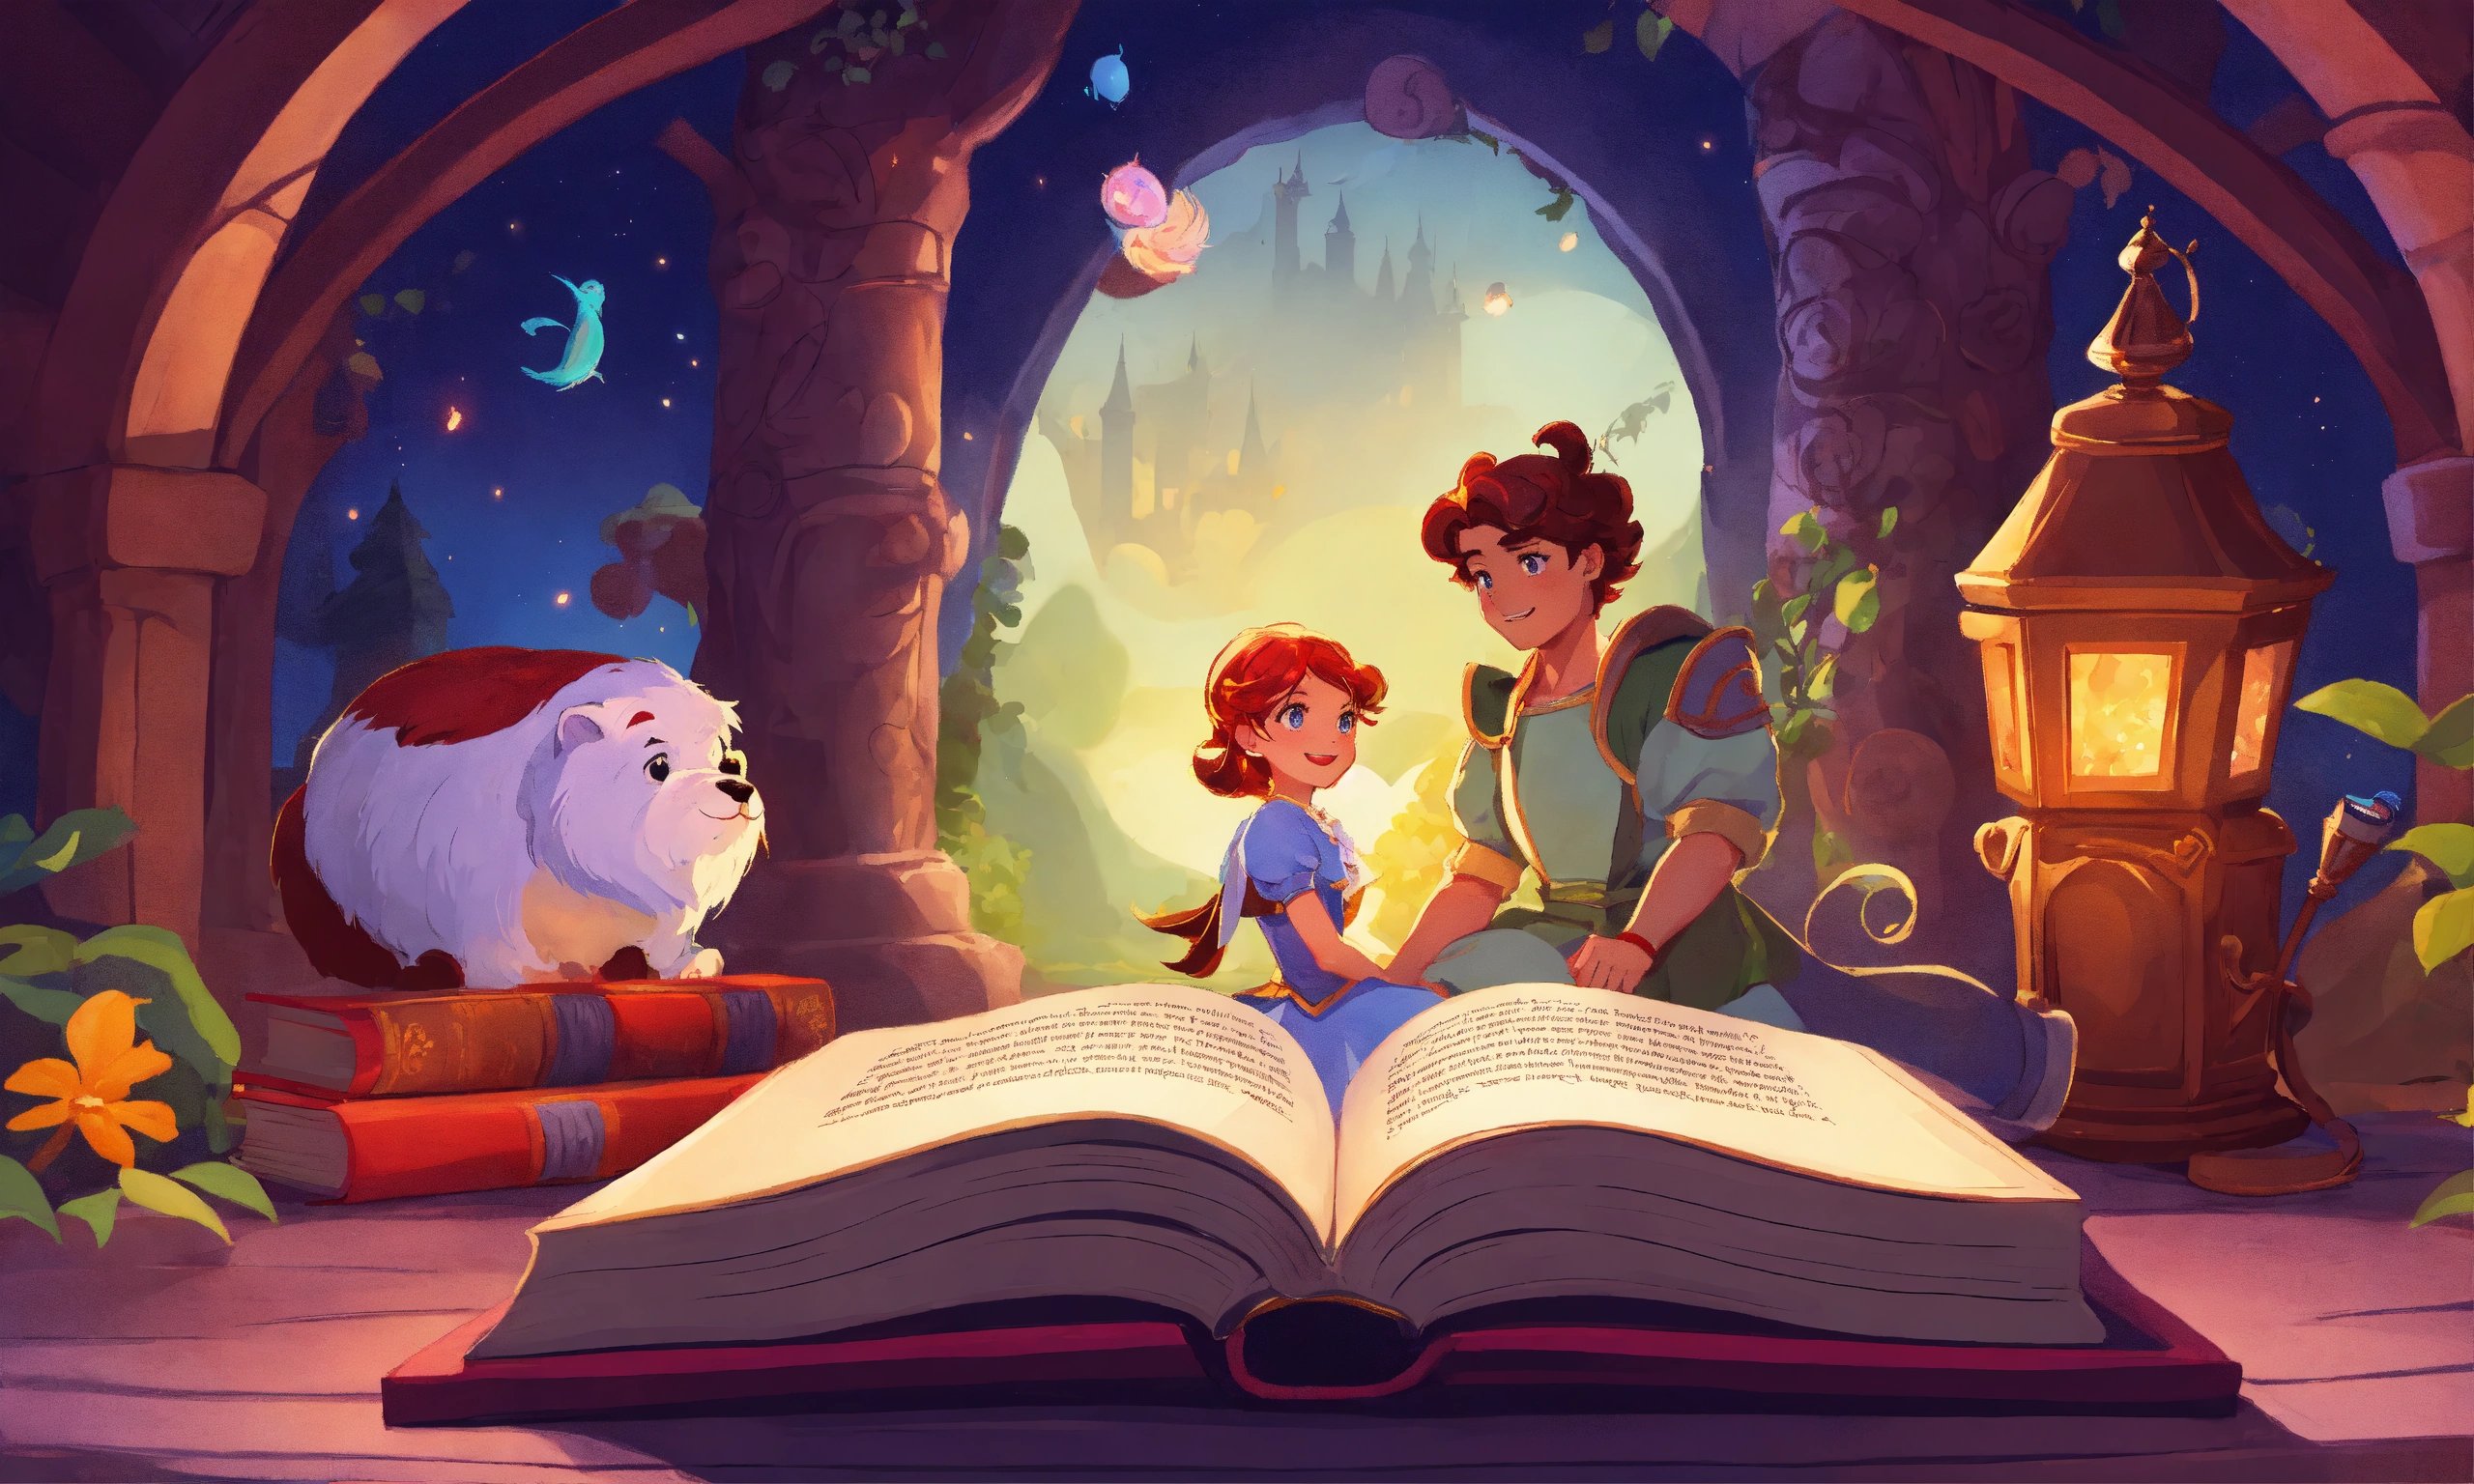 Cartoon style magical book and fairytale heroes.jpg